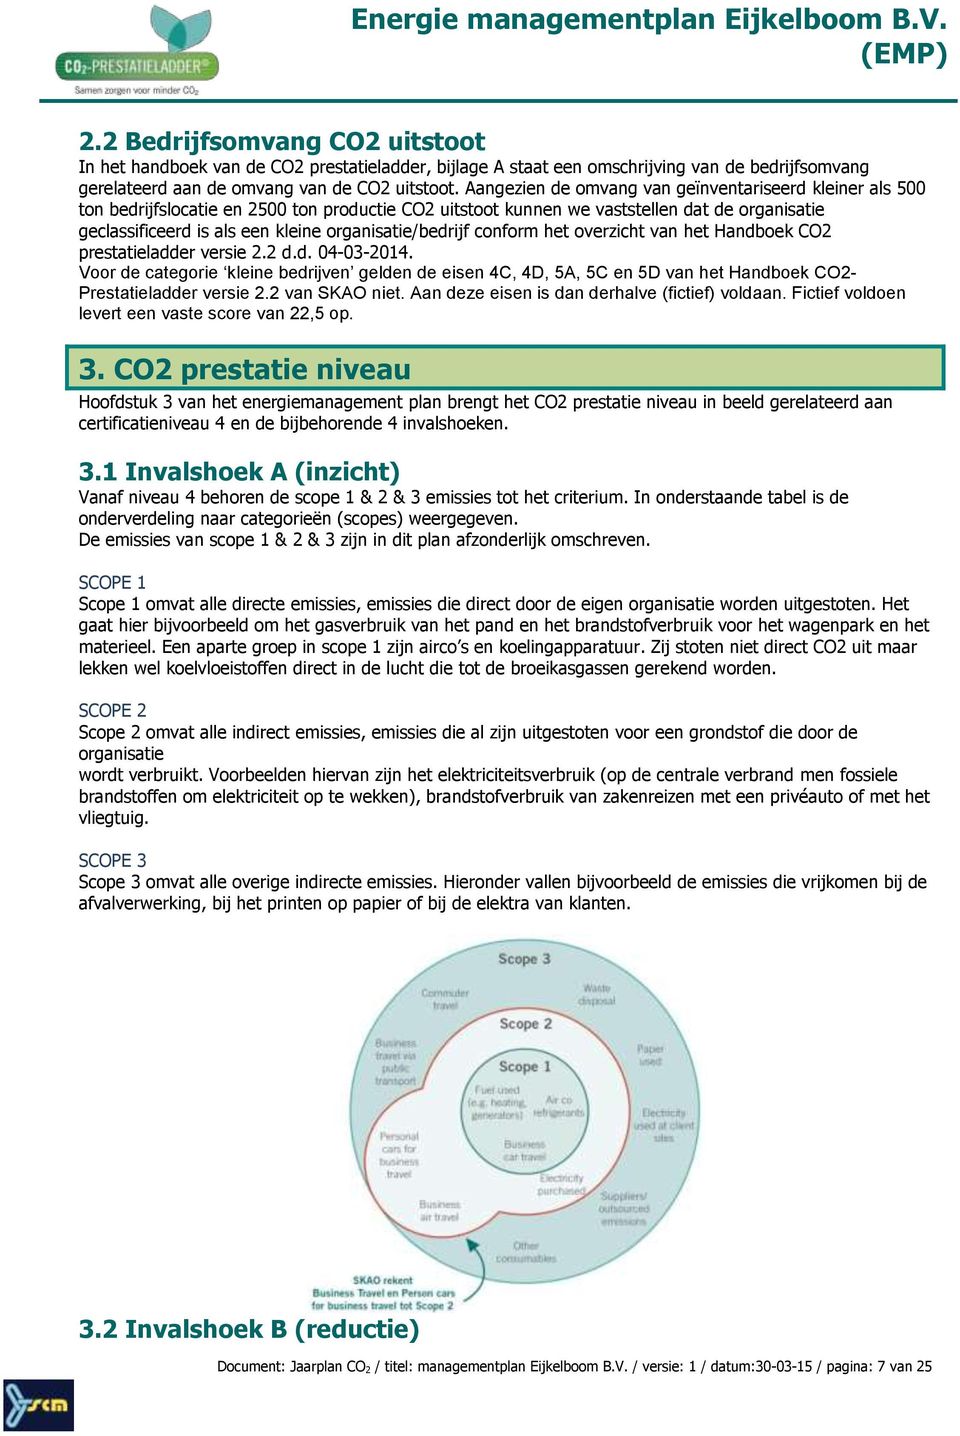 organisatie/bedrijf conform het overzicht van het Handboek CO2 prestatieladder versie 2.2 d.d. 04-03-2014.